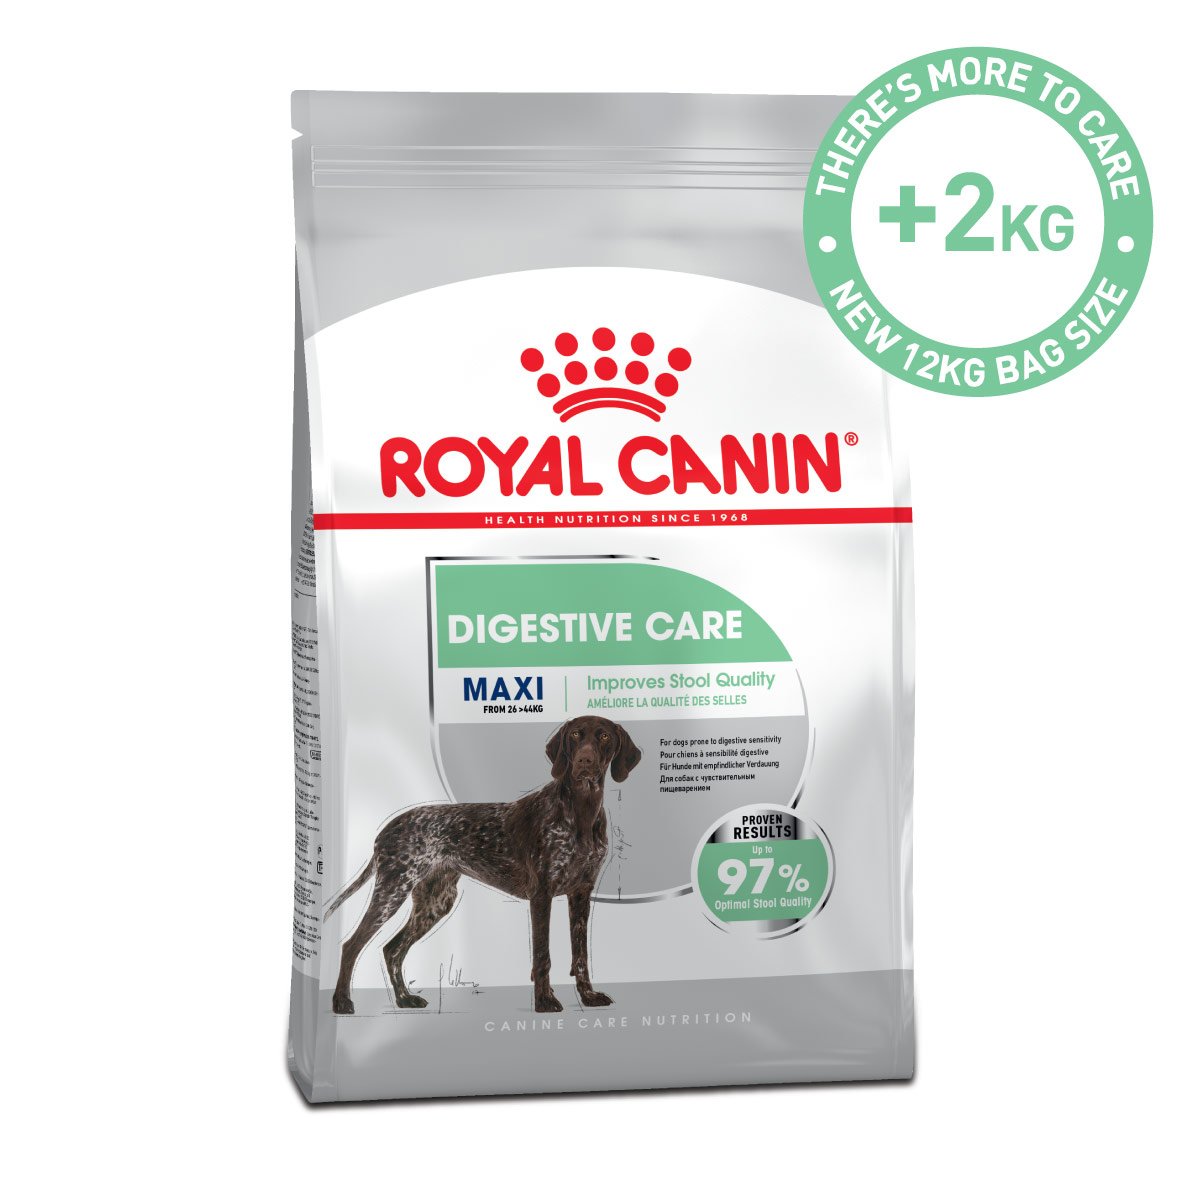 ROYAL CANIN DIGESTIVE CARE MAXI Trockenfutter für große Hunde mit empfindlicher Verdauung 12kg von Royal Canin